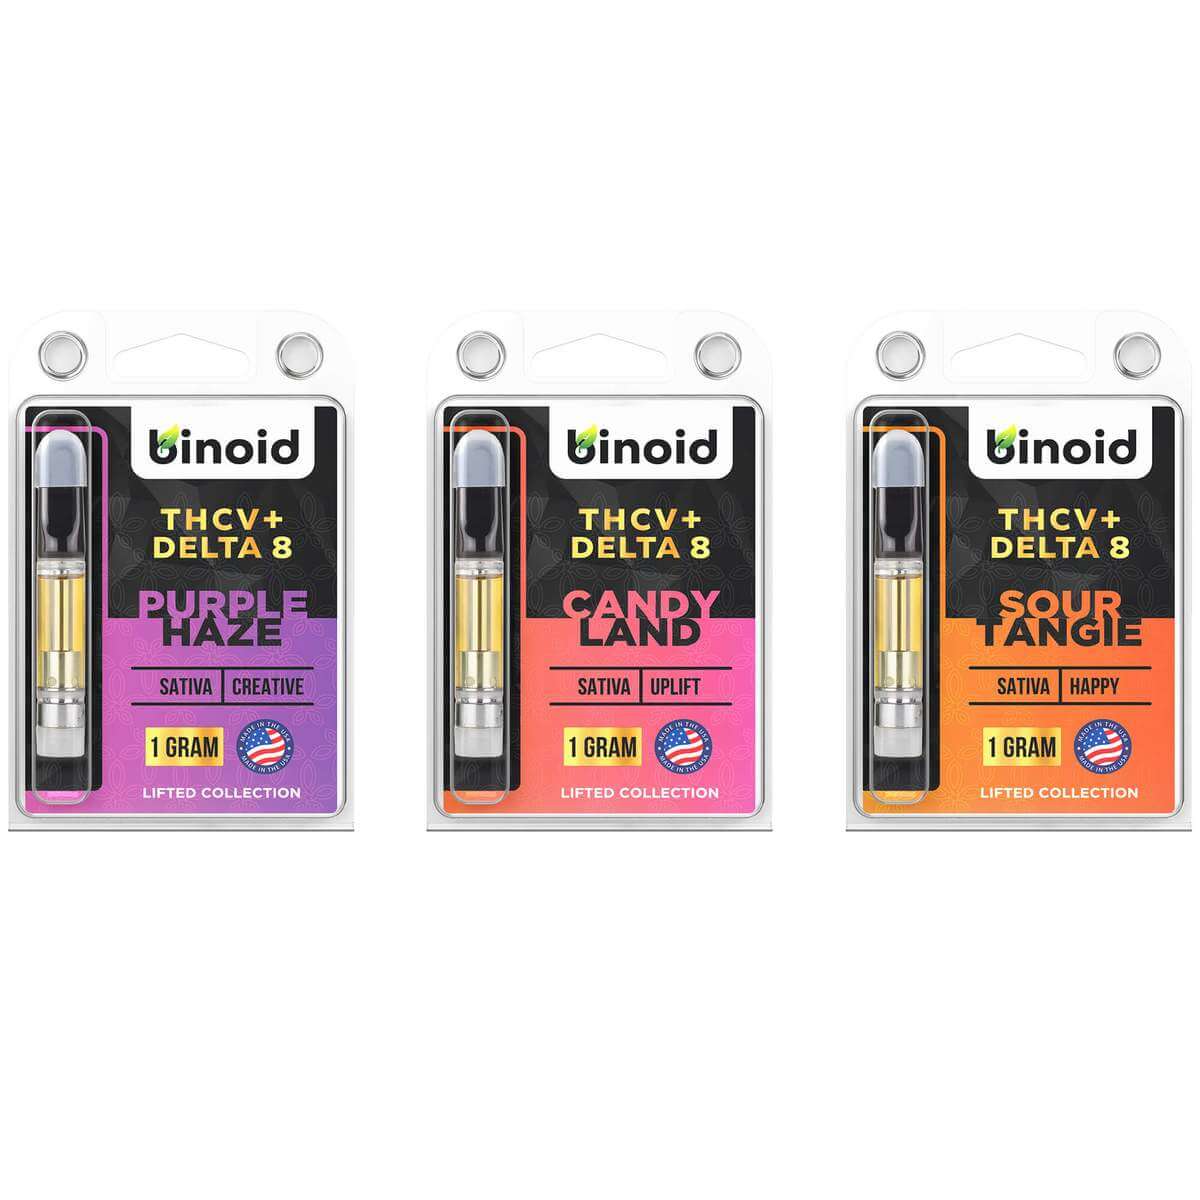 Binoid THCV + Delta 8 Vape Cartridge Bundle